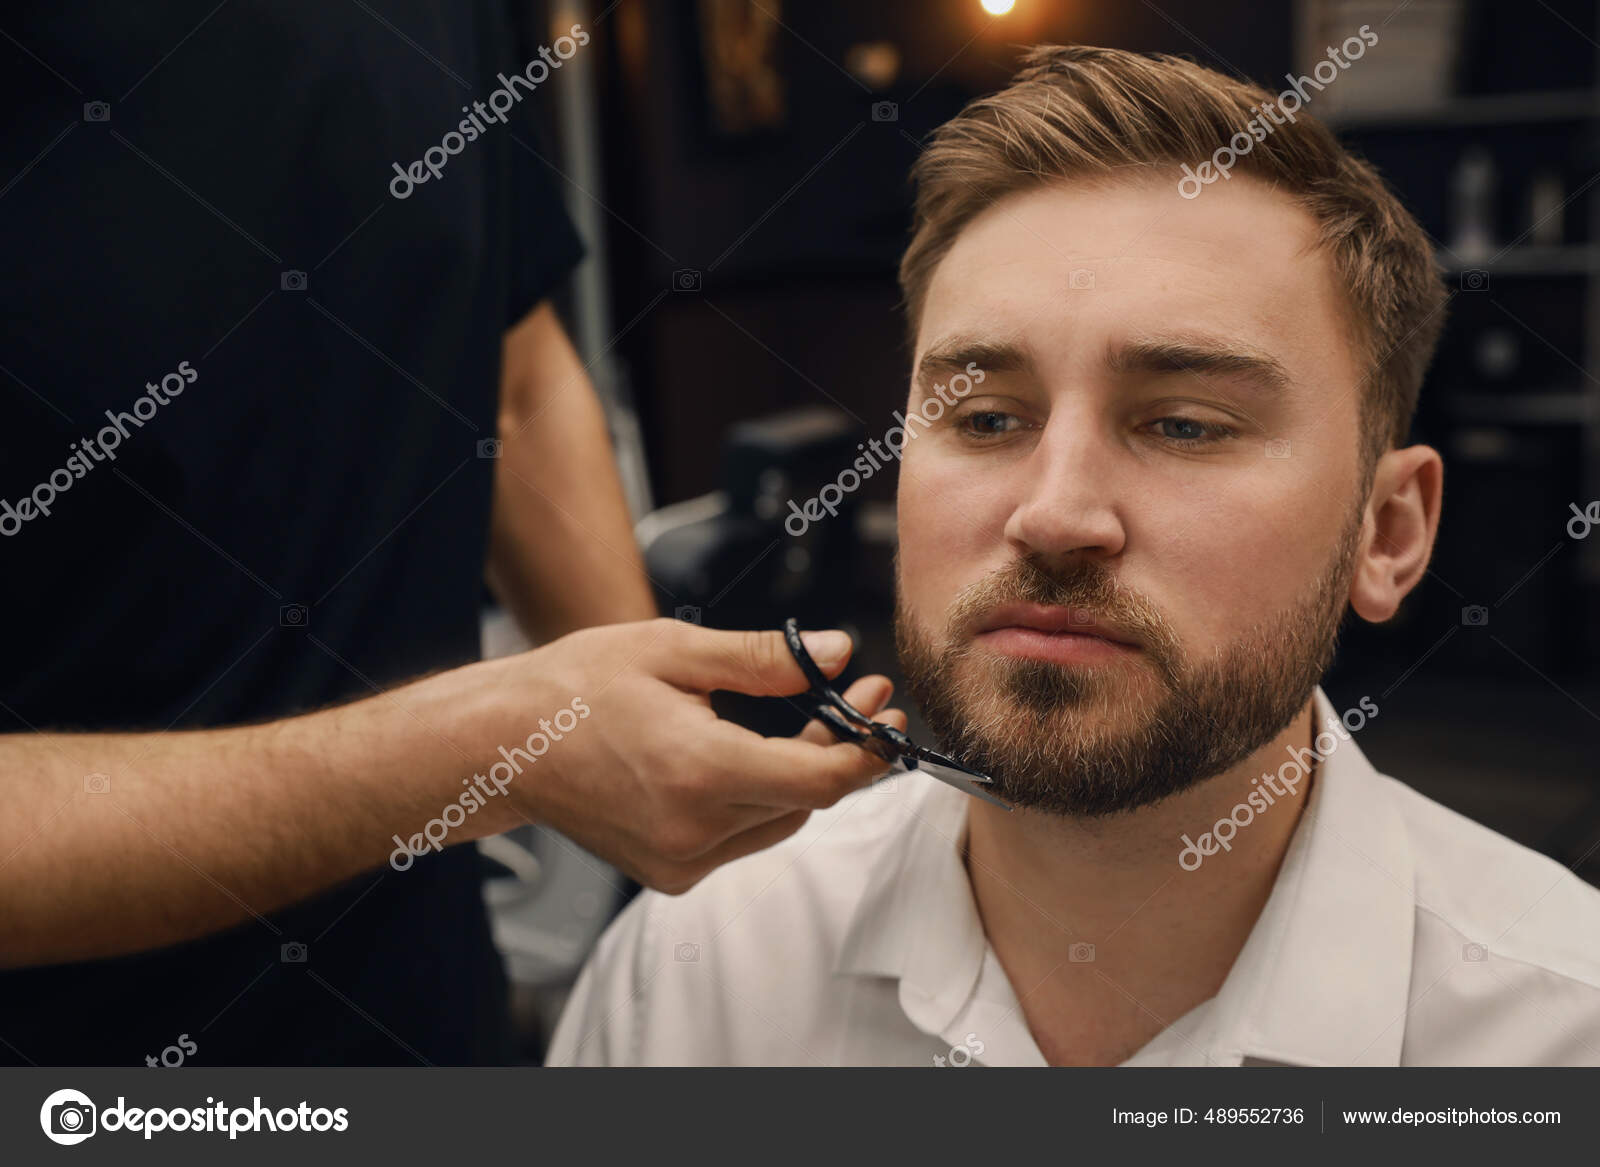 Barbeiro Profissional Que Trabalha Com Um Cliente Em Um Salão De